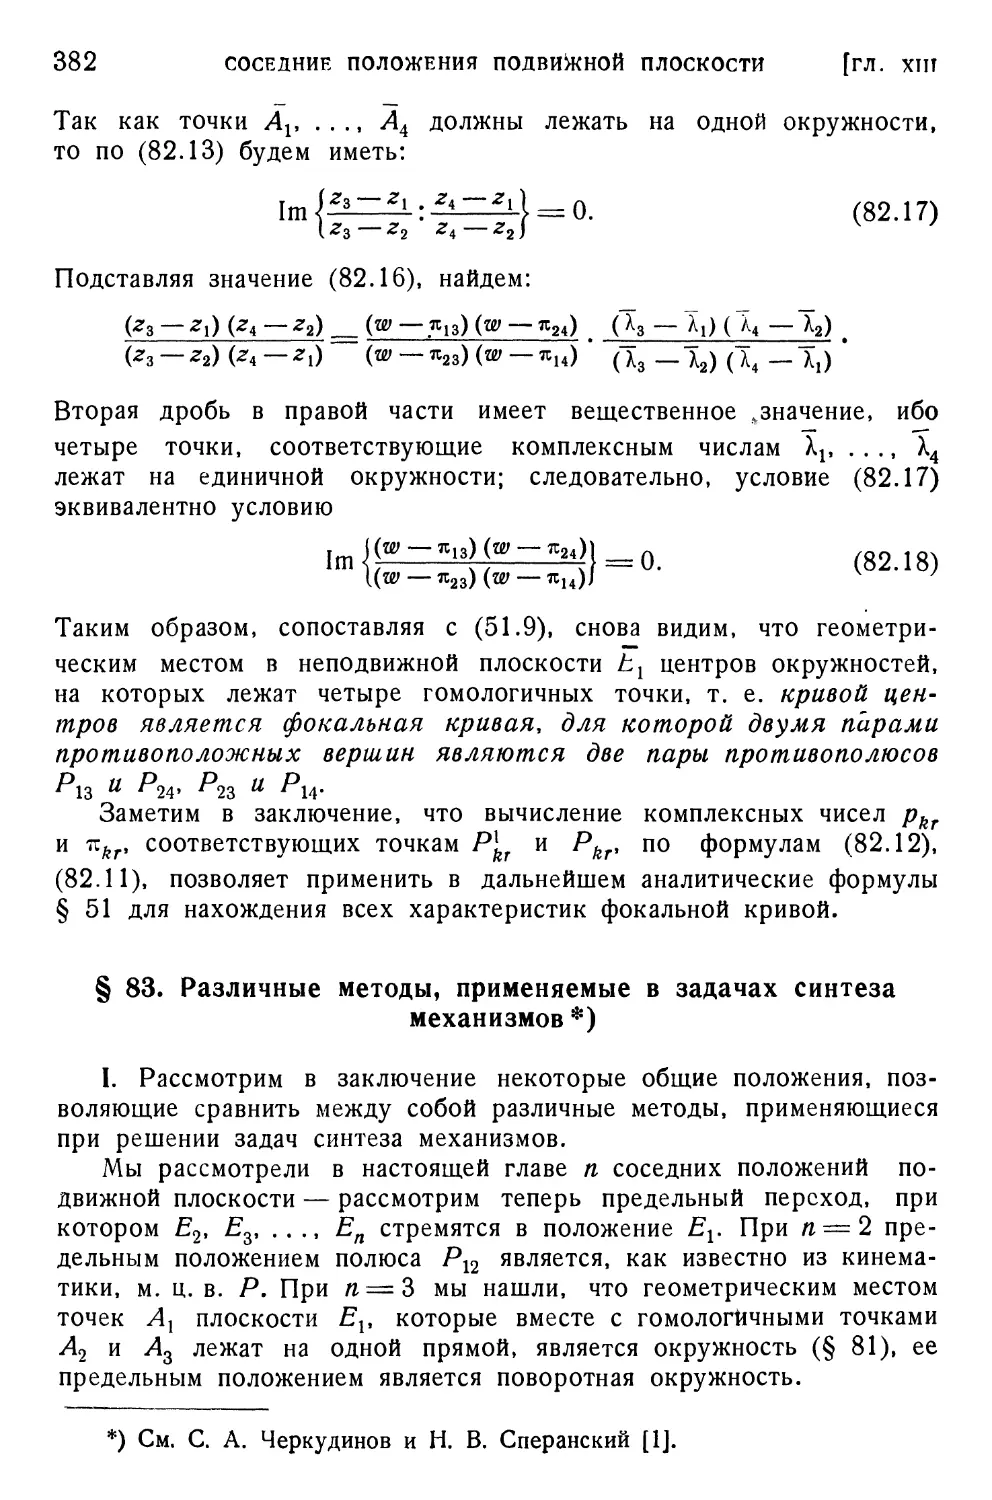 § 83. Различные методы, применяемые в задачах синтеза механизмов